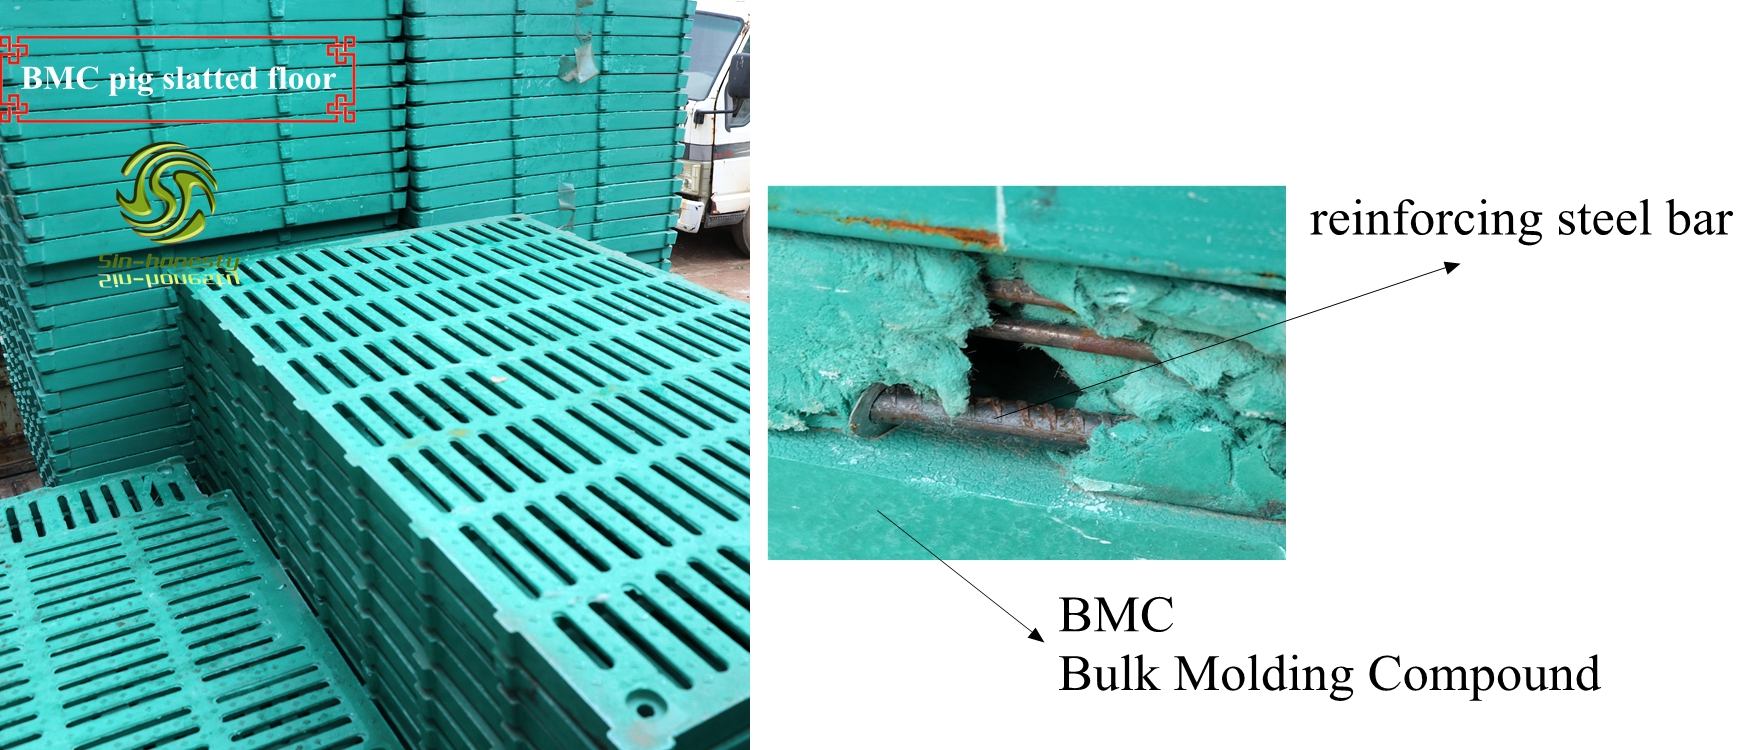 Pig plastic slat composite BMC flooring